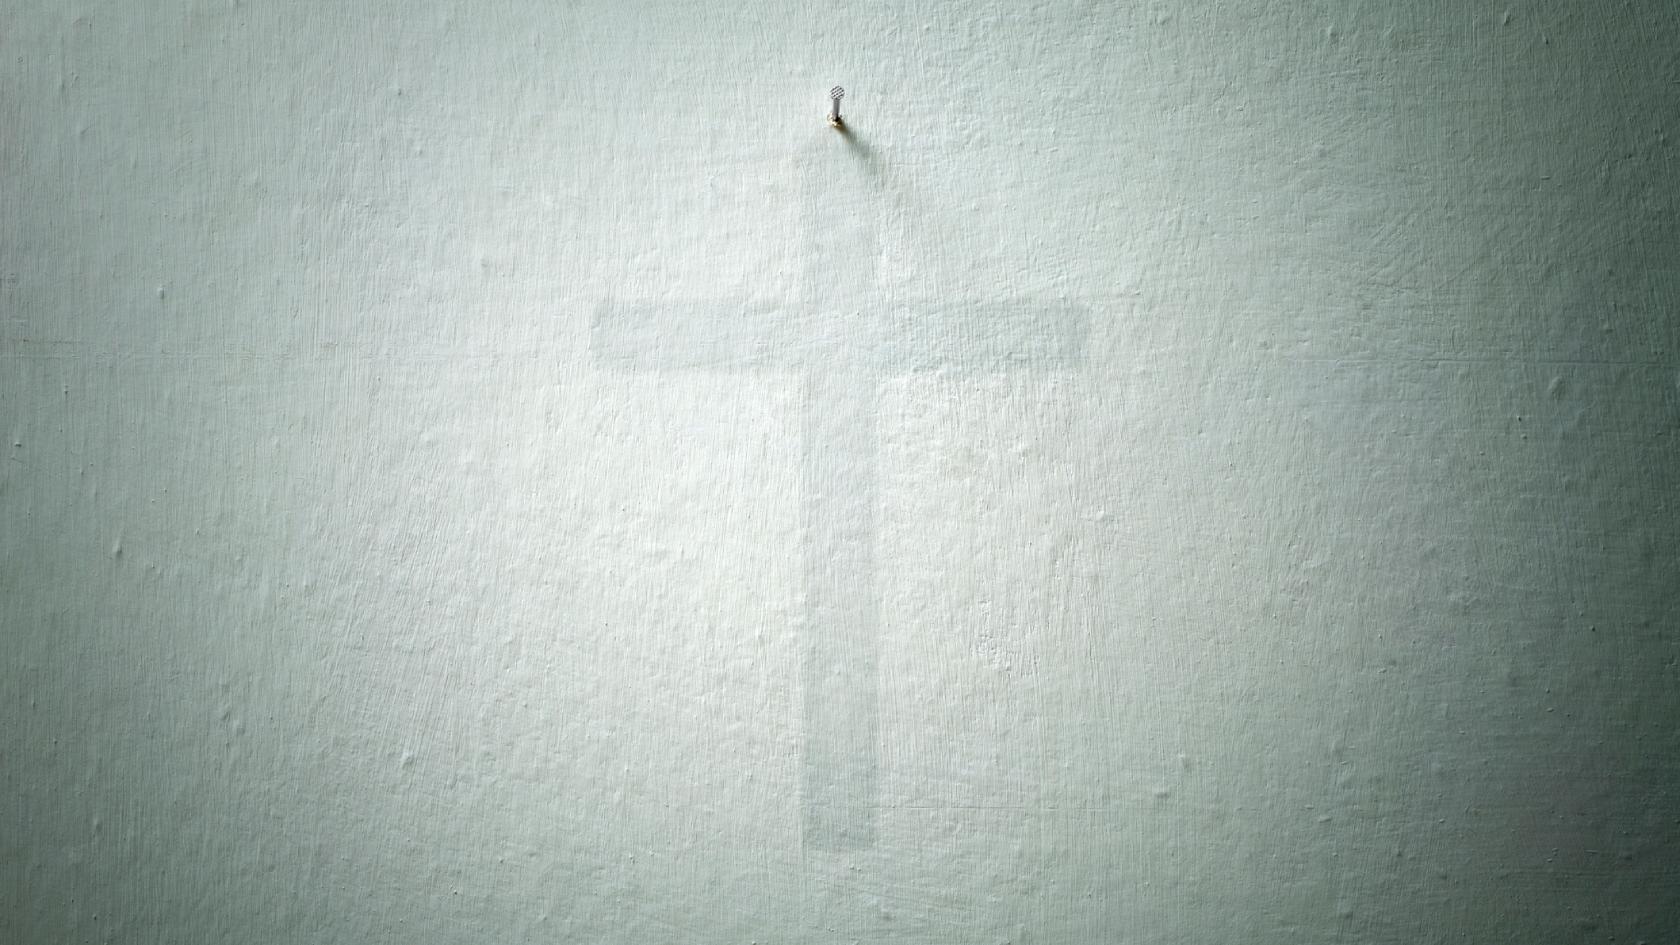 Schatten eines Kreuzes an der Wand